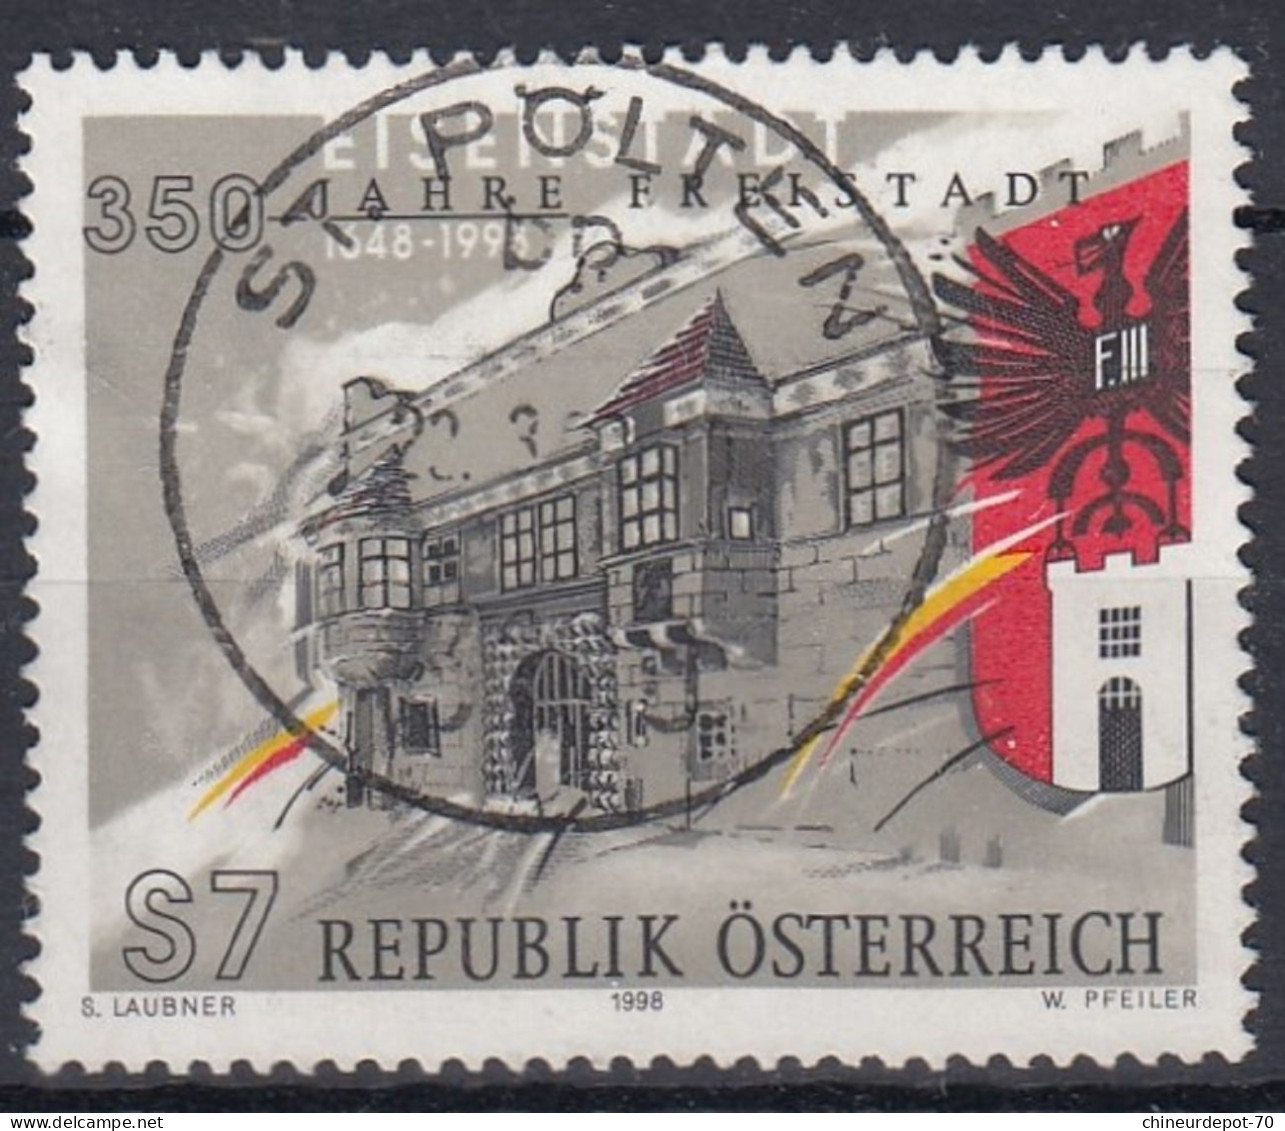 S7 REPUBLIK ÖSTERREICH S LAUBNER 1998 W PFEILER Cachet Sankt Polten - Used Stamps